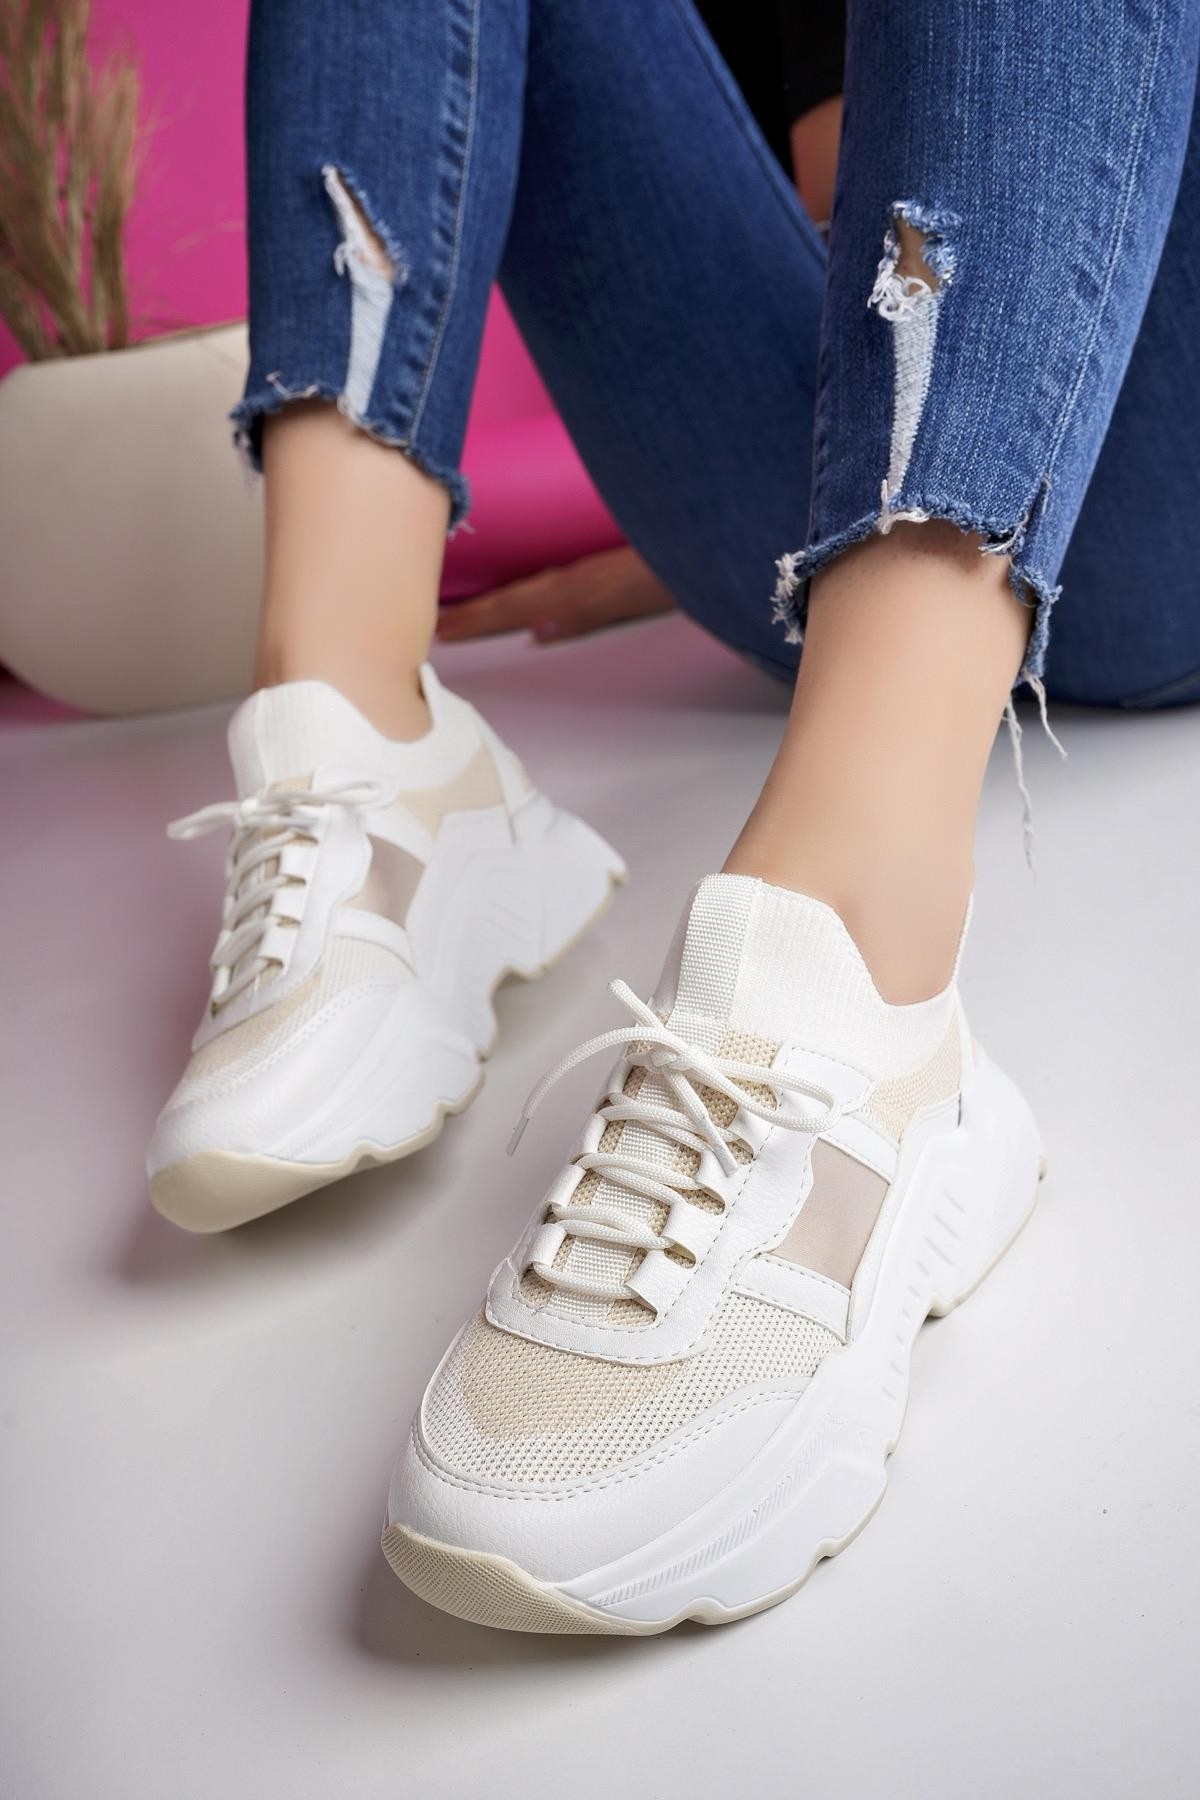 Muggo SEPHO Garantili Günlük Yürüyüş Koşu Yüksek Taban Rahat Kadın Sneaker Spor Ayakkabı - BEYAZ